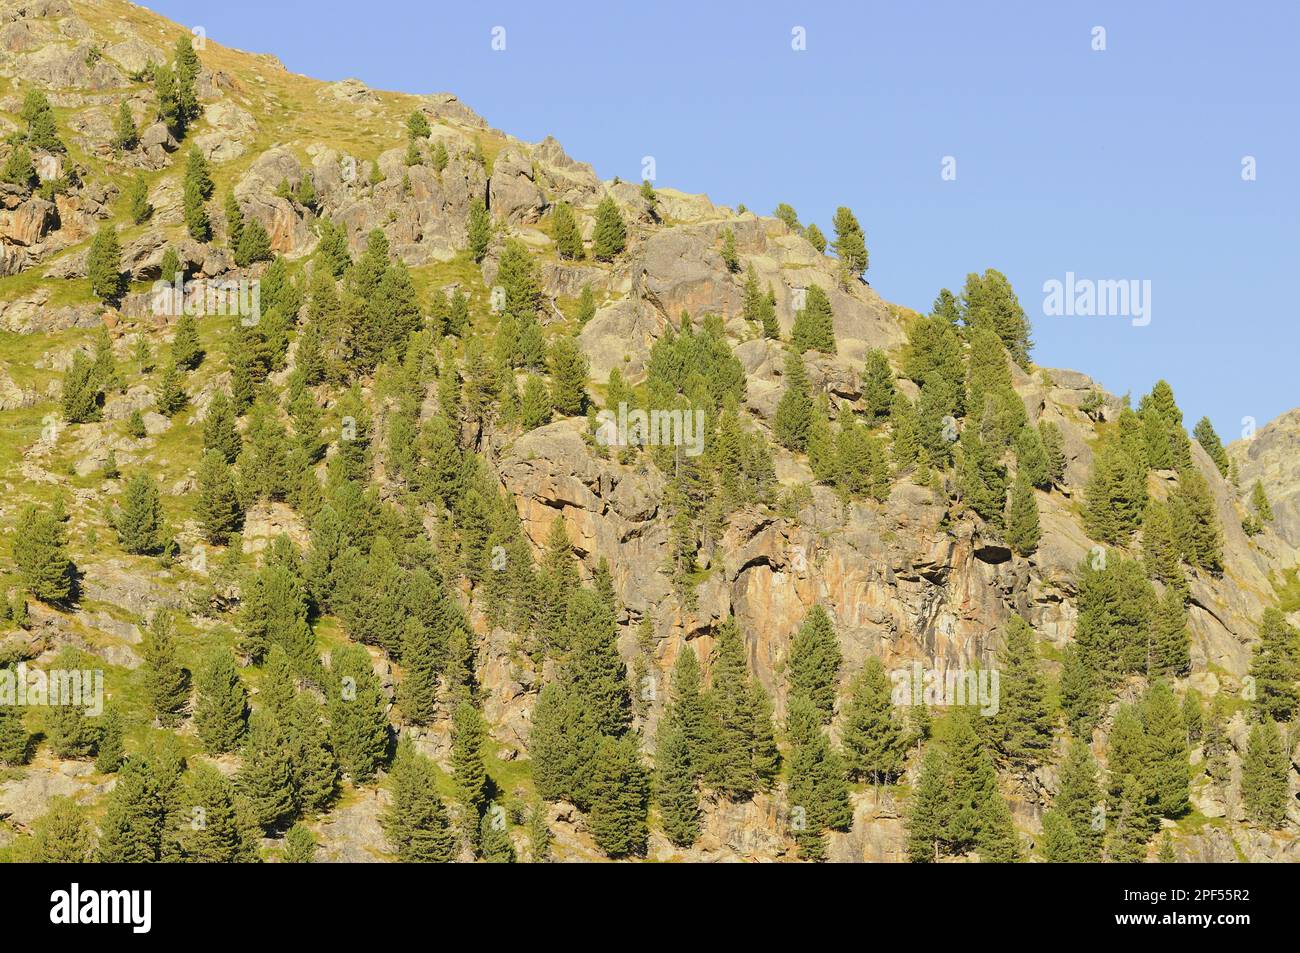 Arolla Pine (Pinus cembra) habit, forest growing amongst rocks on slope in mountain habitat, Italian Alps, Italy Stock Photo